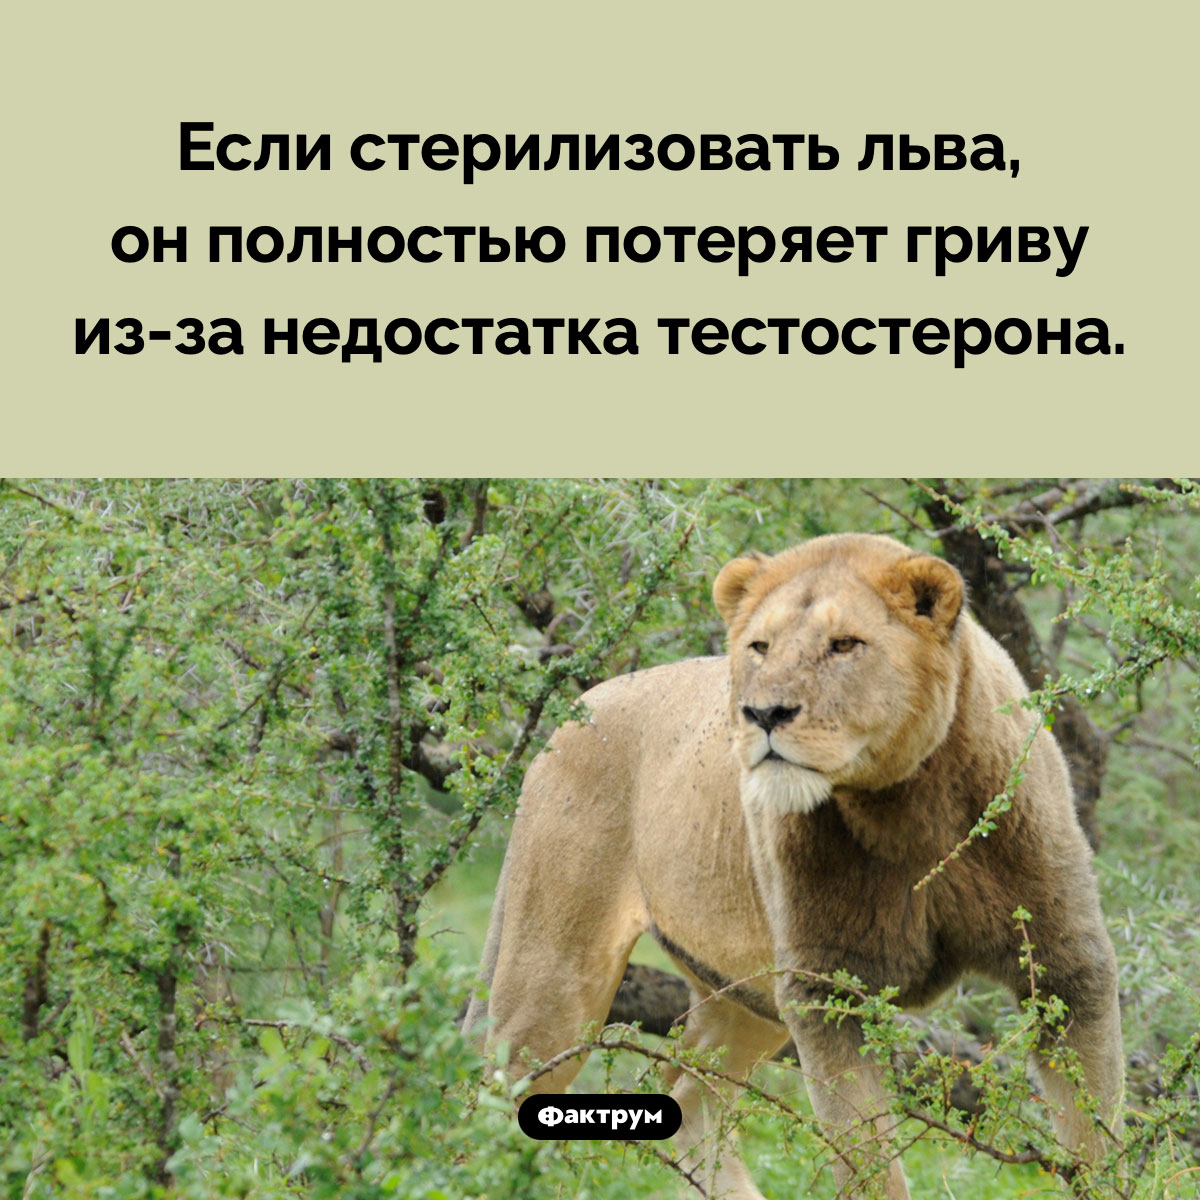 Что будет, если стерилизовать льва. Если стерилизовать льва, он полностью потеряет гриву из-за недостатка тестостерона.